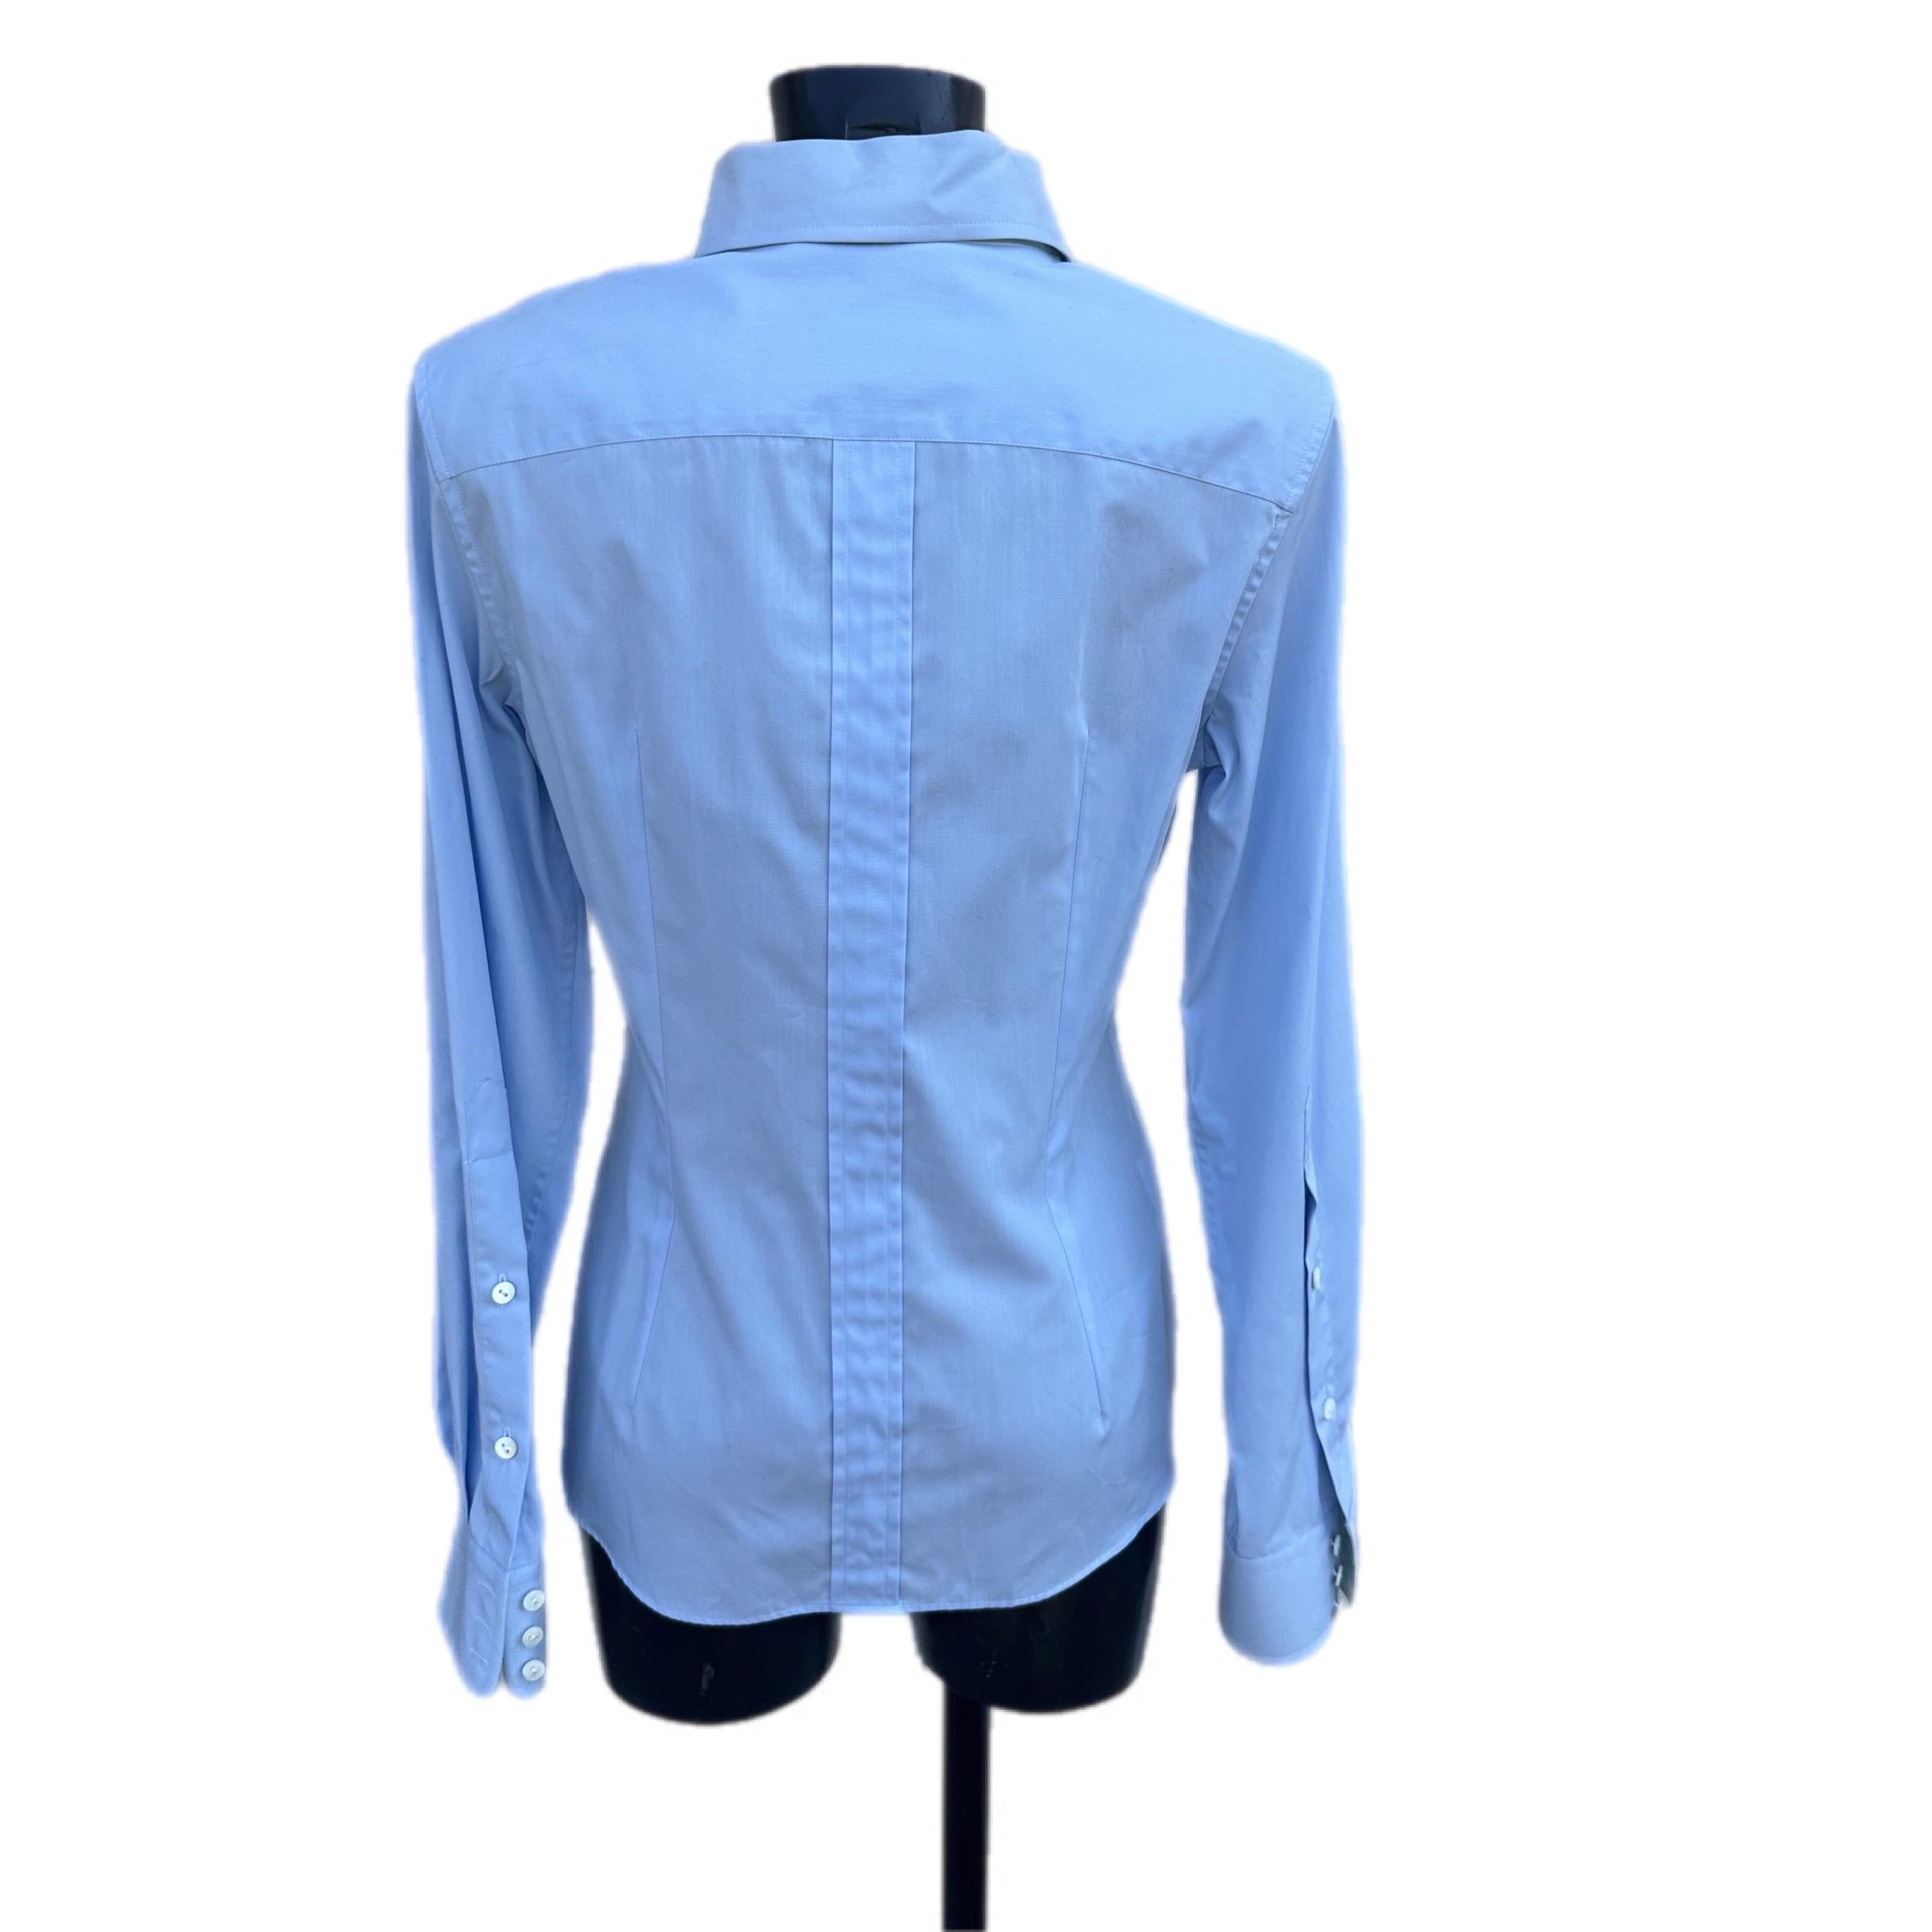 Dolce & Gabbana camicia celeste con bottoni logati invisibili. Dettagli in seta azzurra 
Taglia 46 vestibilità piccola. 
Misure: 
Spalle 44cm
Manica 65cm
Petto 46cm
Vita 42cm
Lunghezza 70cm